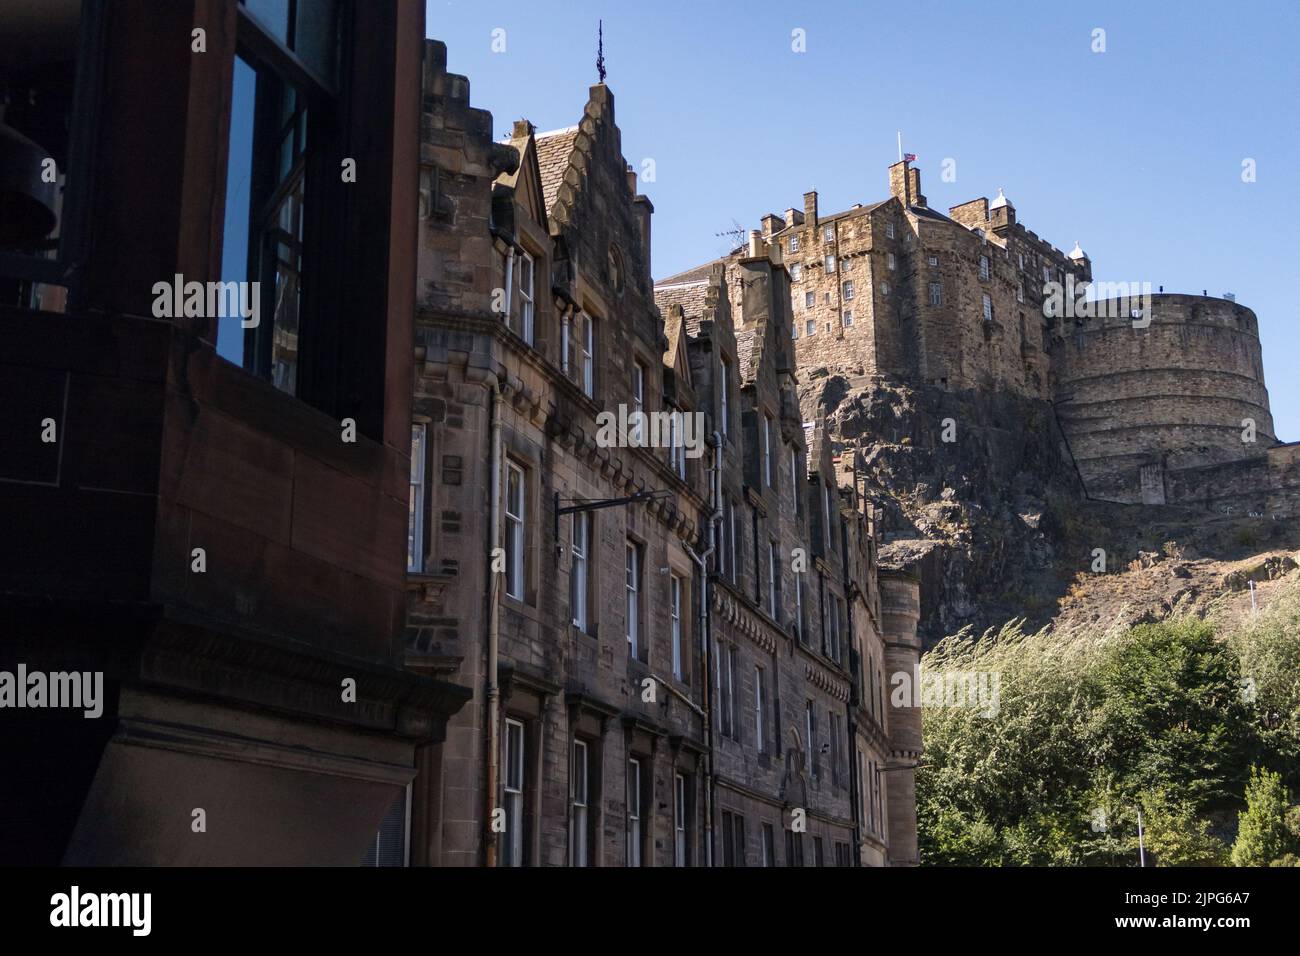 Vue sur le château d'Édimbourg par beau temps Banque D'Images